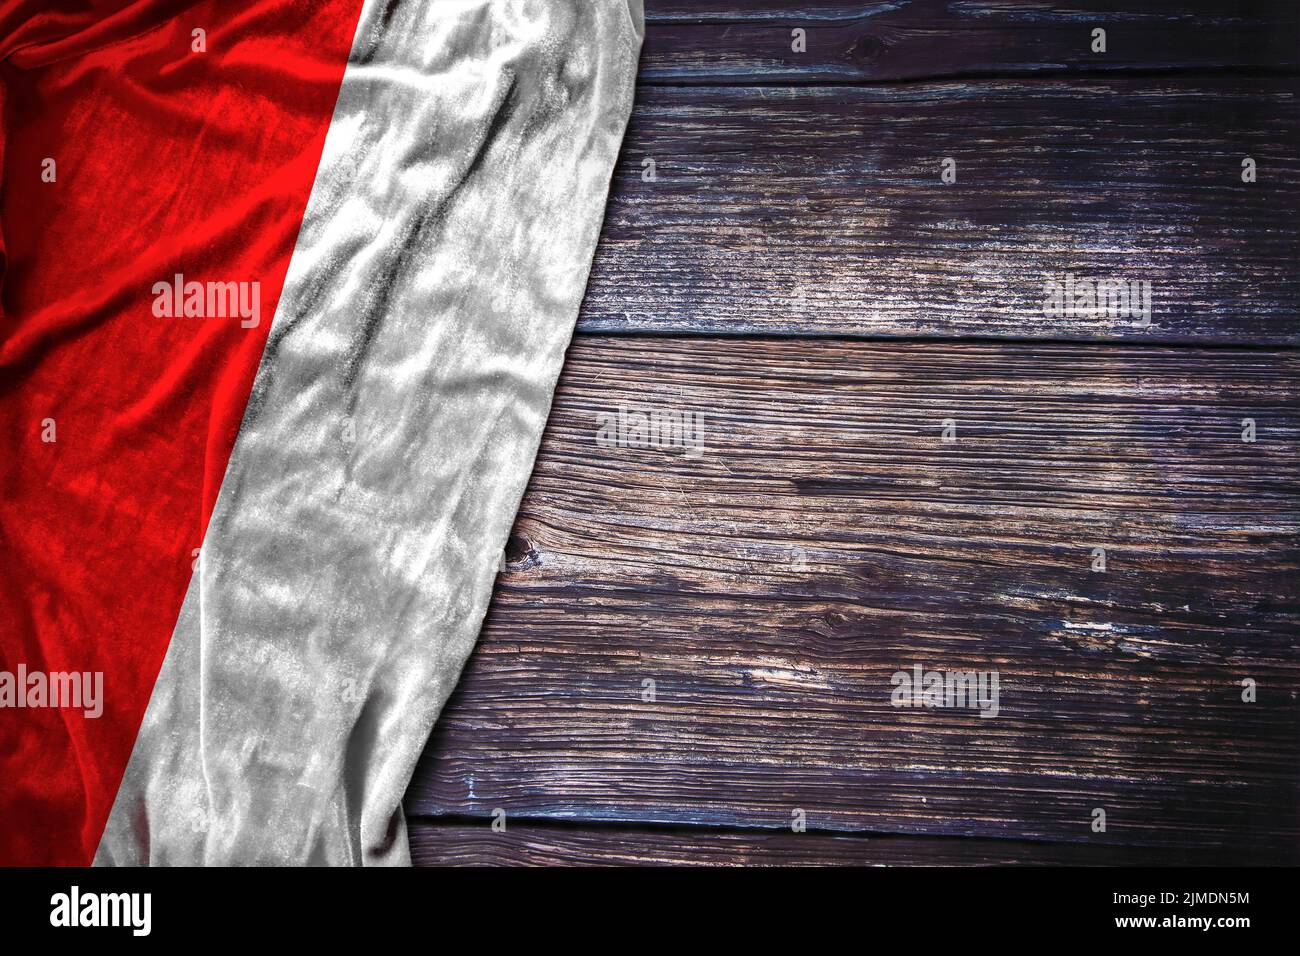 Indonesische Flagge auf rustikalem Holzhintergrund für den Indonesischen Nationaltag, den Gedenktag oder das Labor Day Konzept. Stockfoto